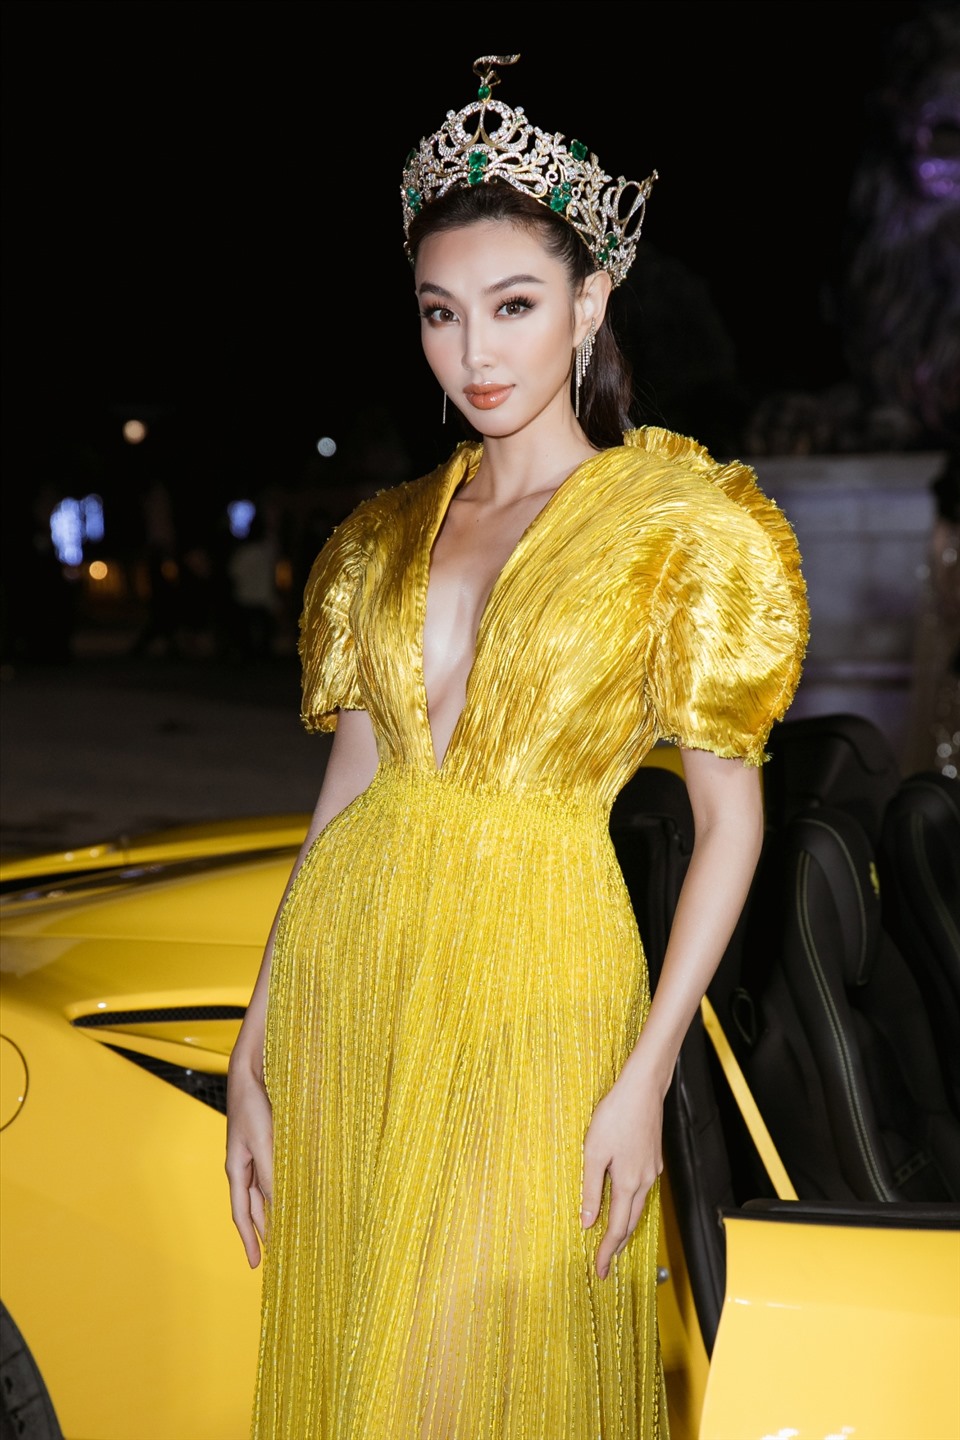 Hoa hậu Thùy Tiên xuất hiện rạng rỡ trong bộ đầm vàng nổi bật